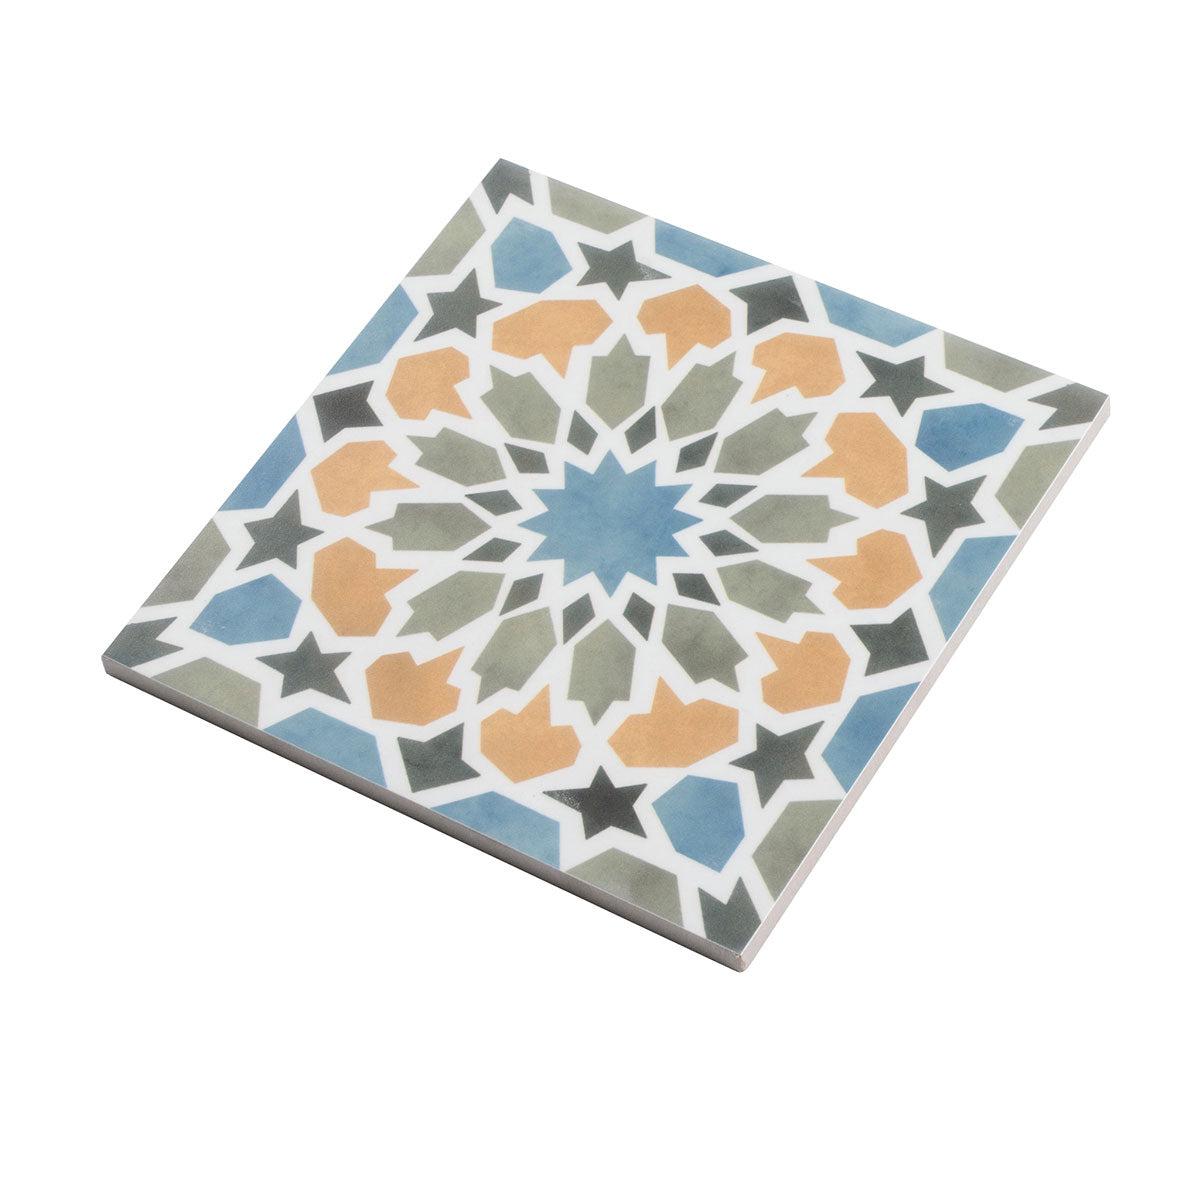 Amira Multicolor Patterned Porcelain Tile